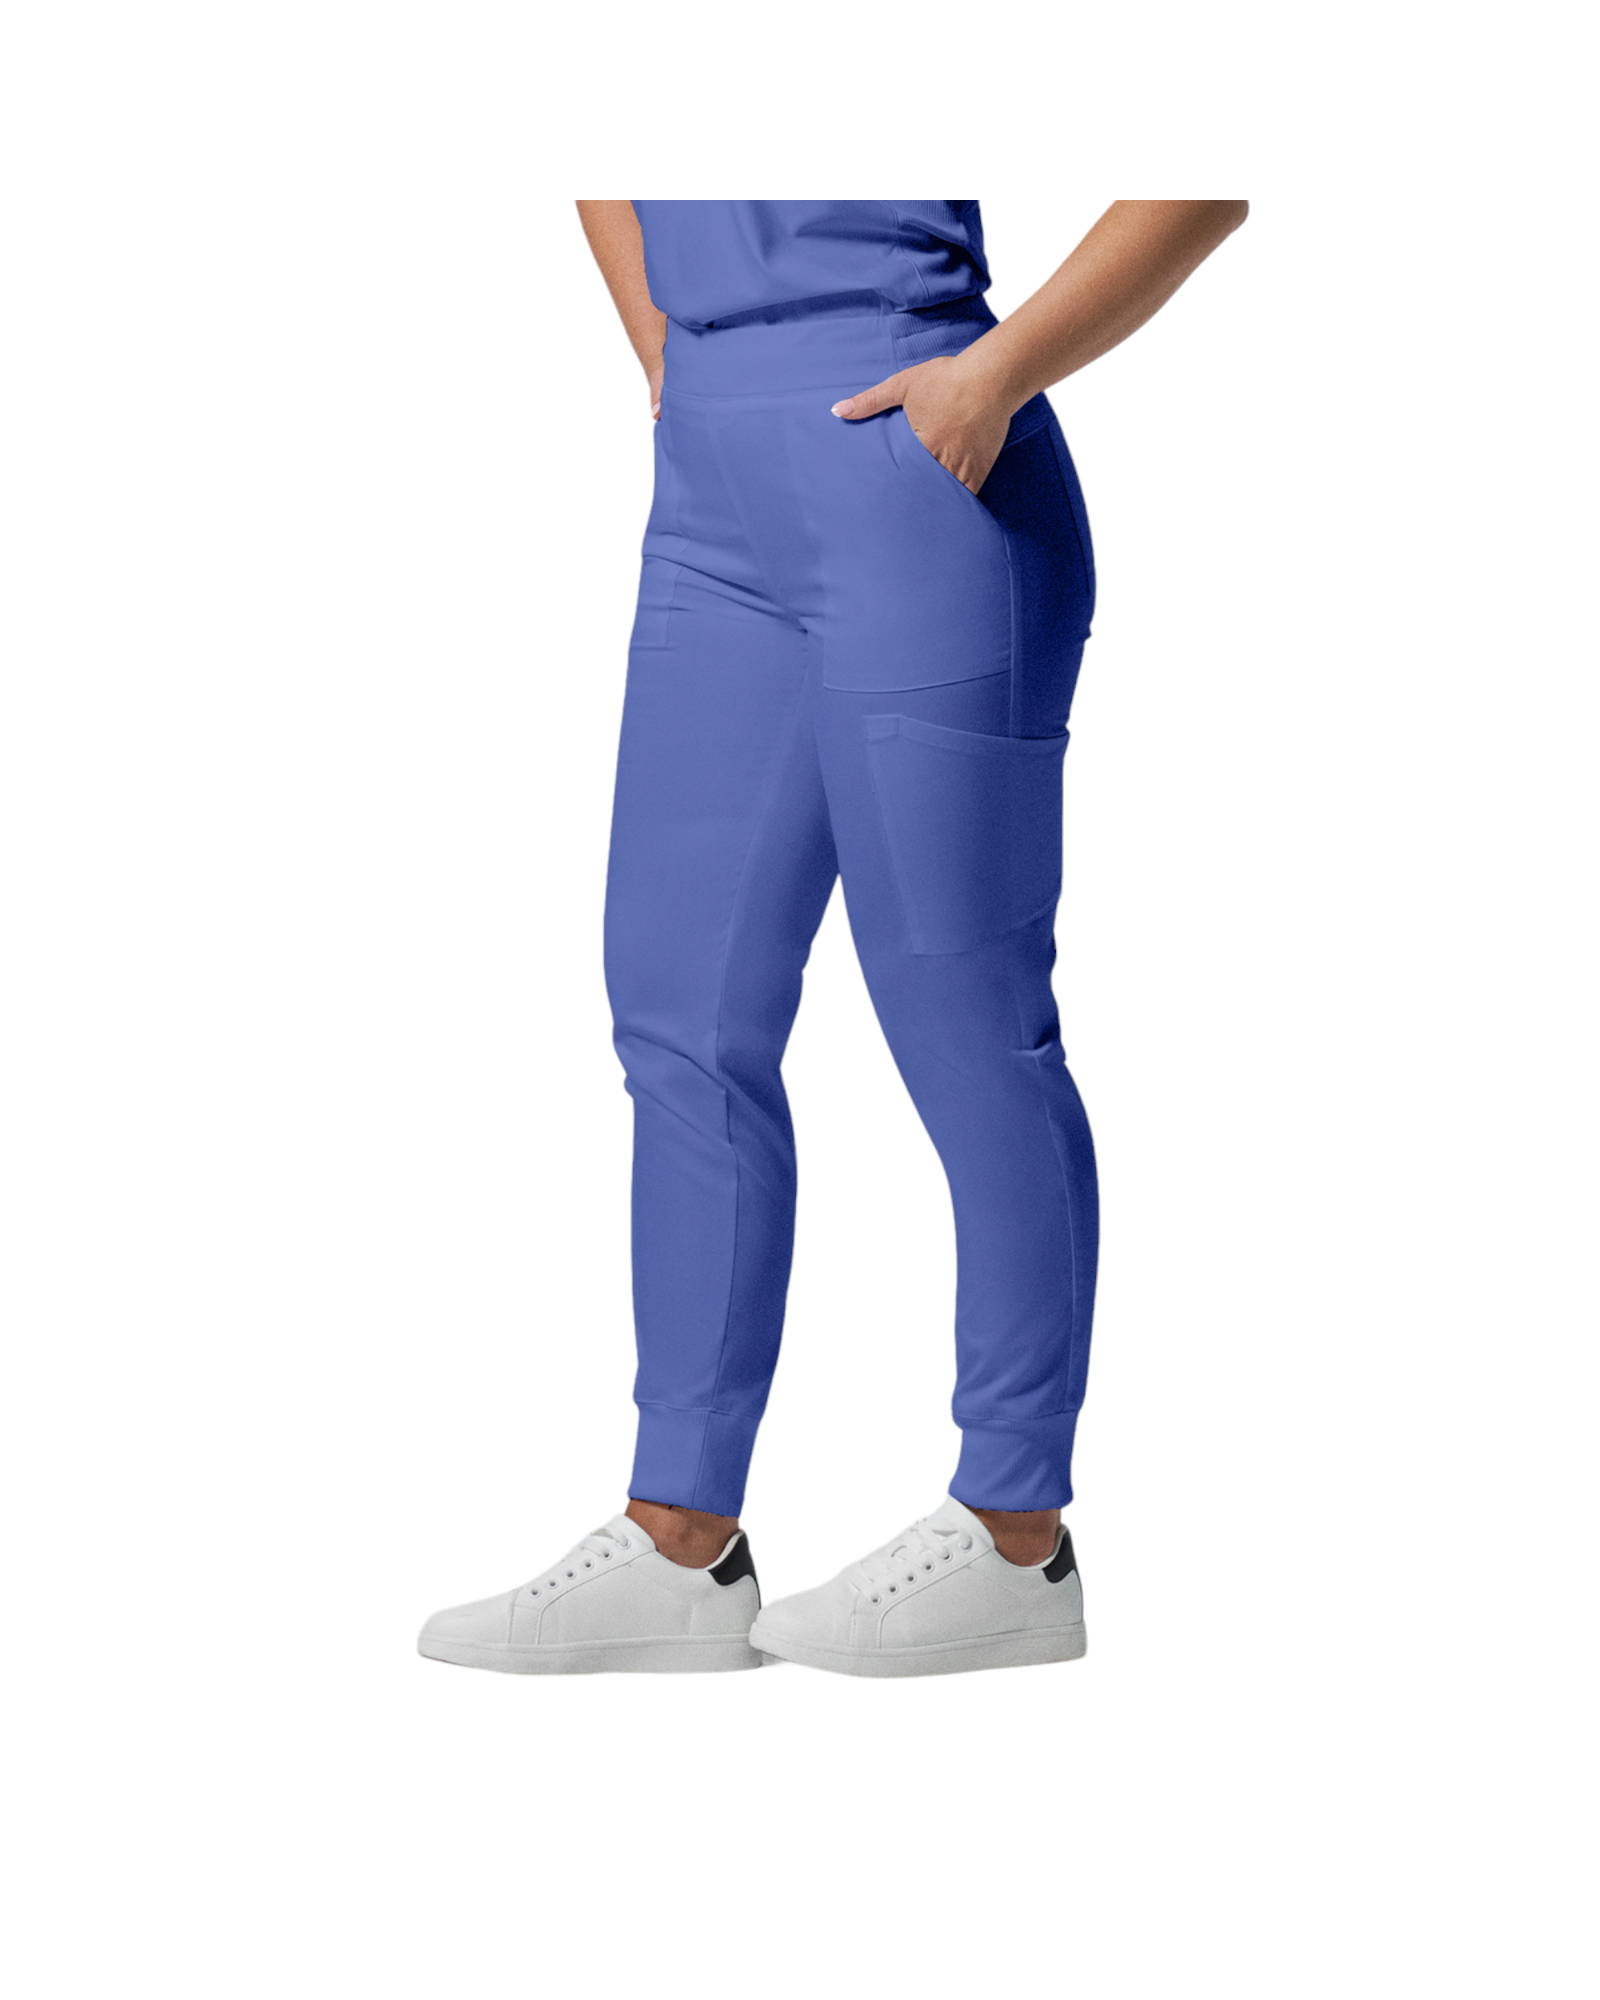 Pantalon de style jogger 6 poches pour femmes Landau Proflex #LB406 couleur Bleu ciel